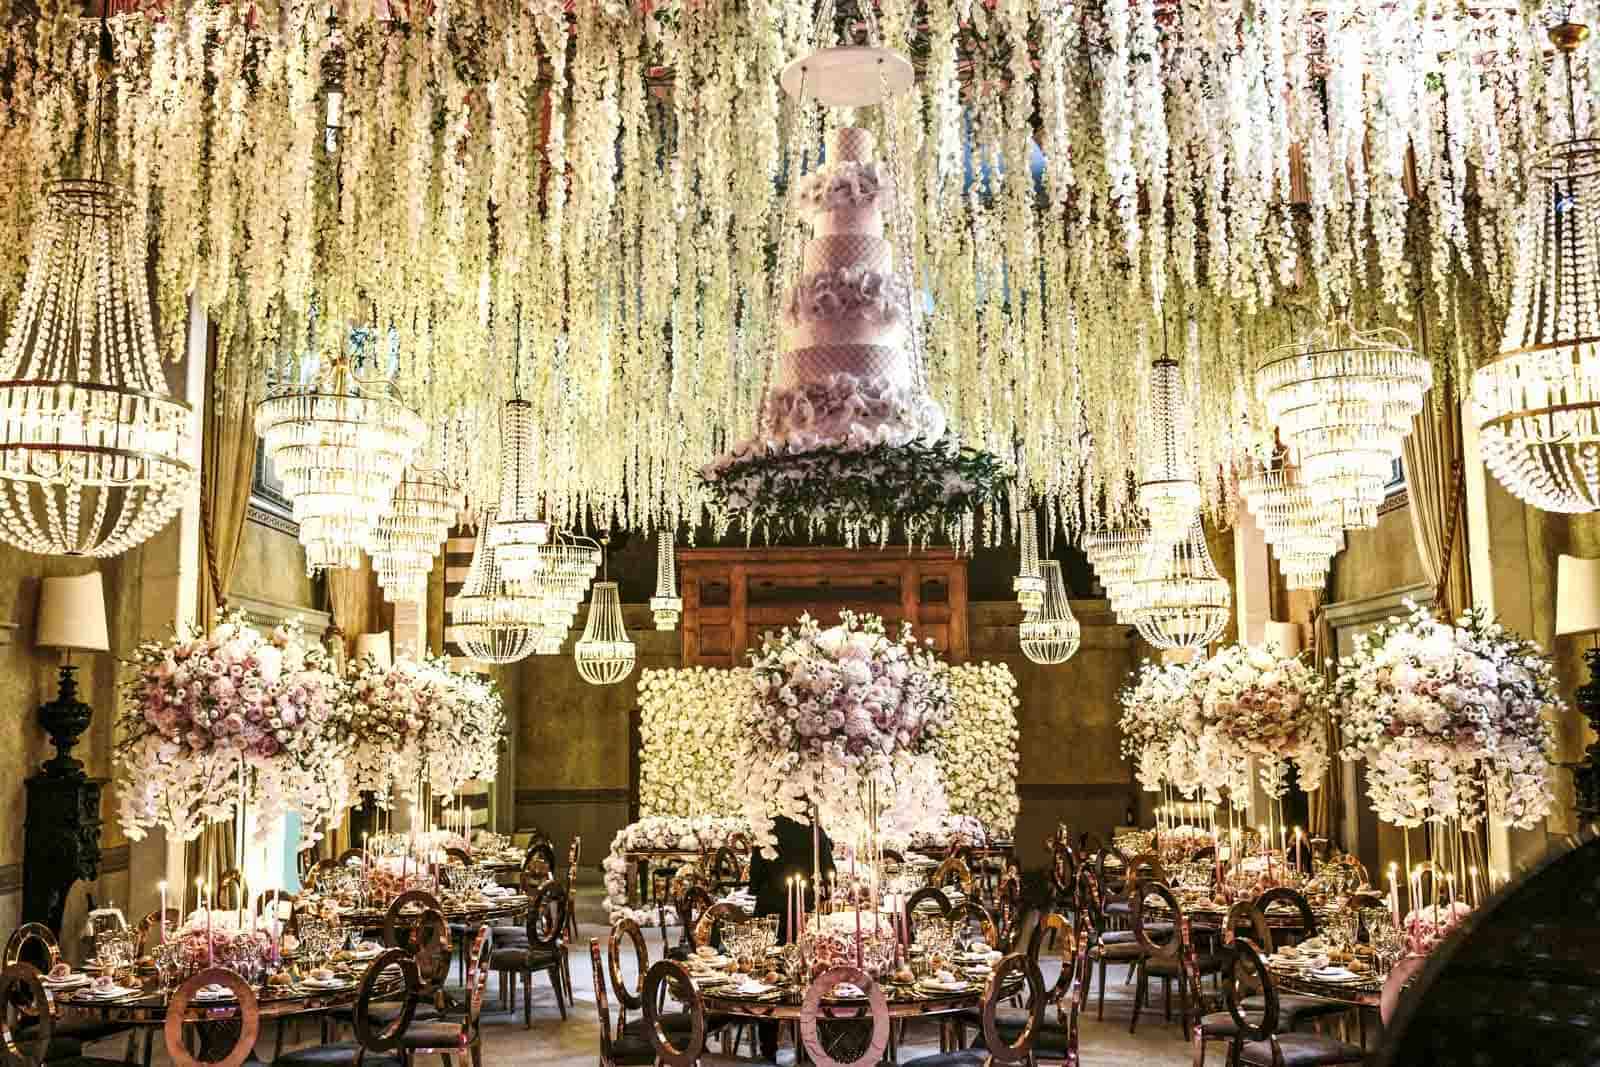 Extravagant Four Seasons Hanging Wedding Cake